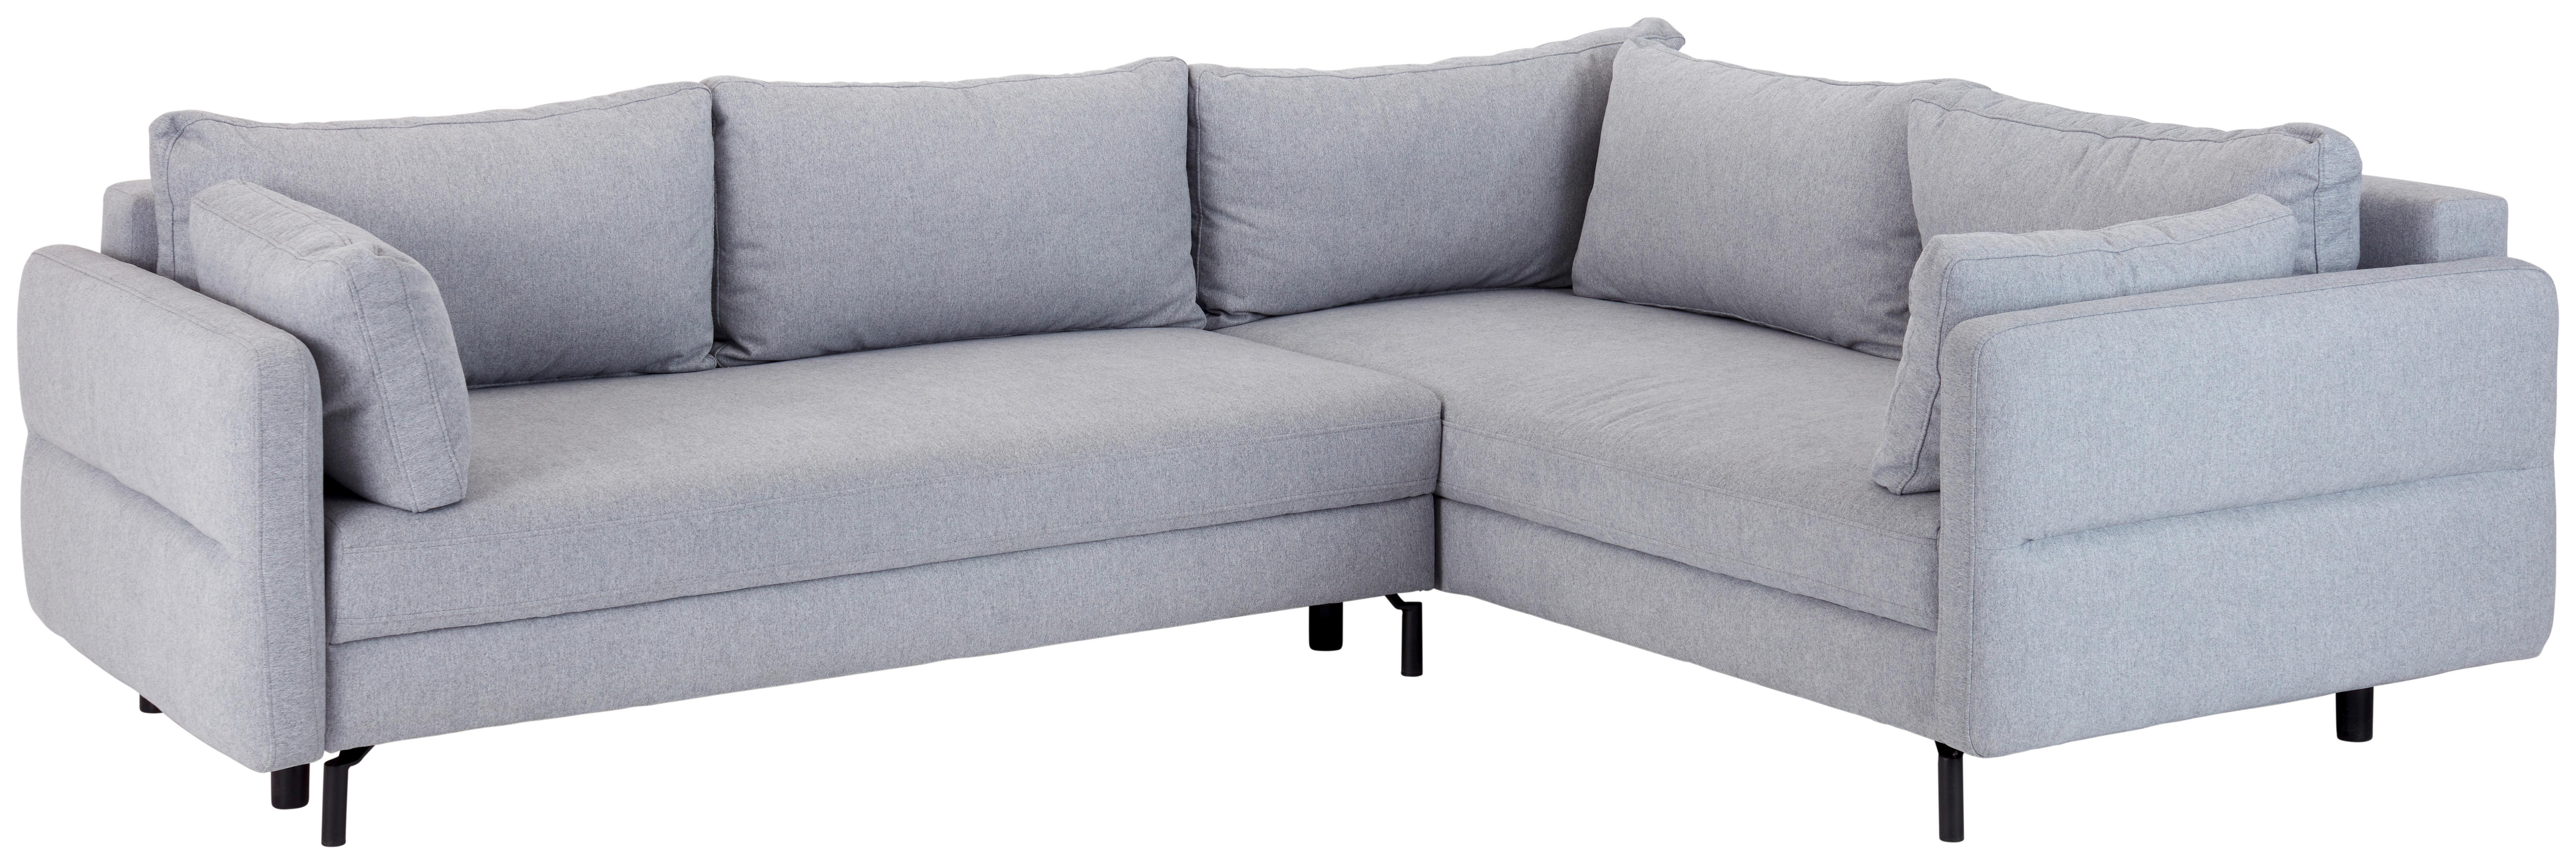 Sedežna Garnitura Salto, Z Ležiščem - siva/črna, Moderno, tekstil (281/73-84/221cm) - Modern Living